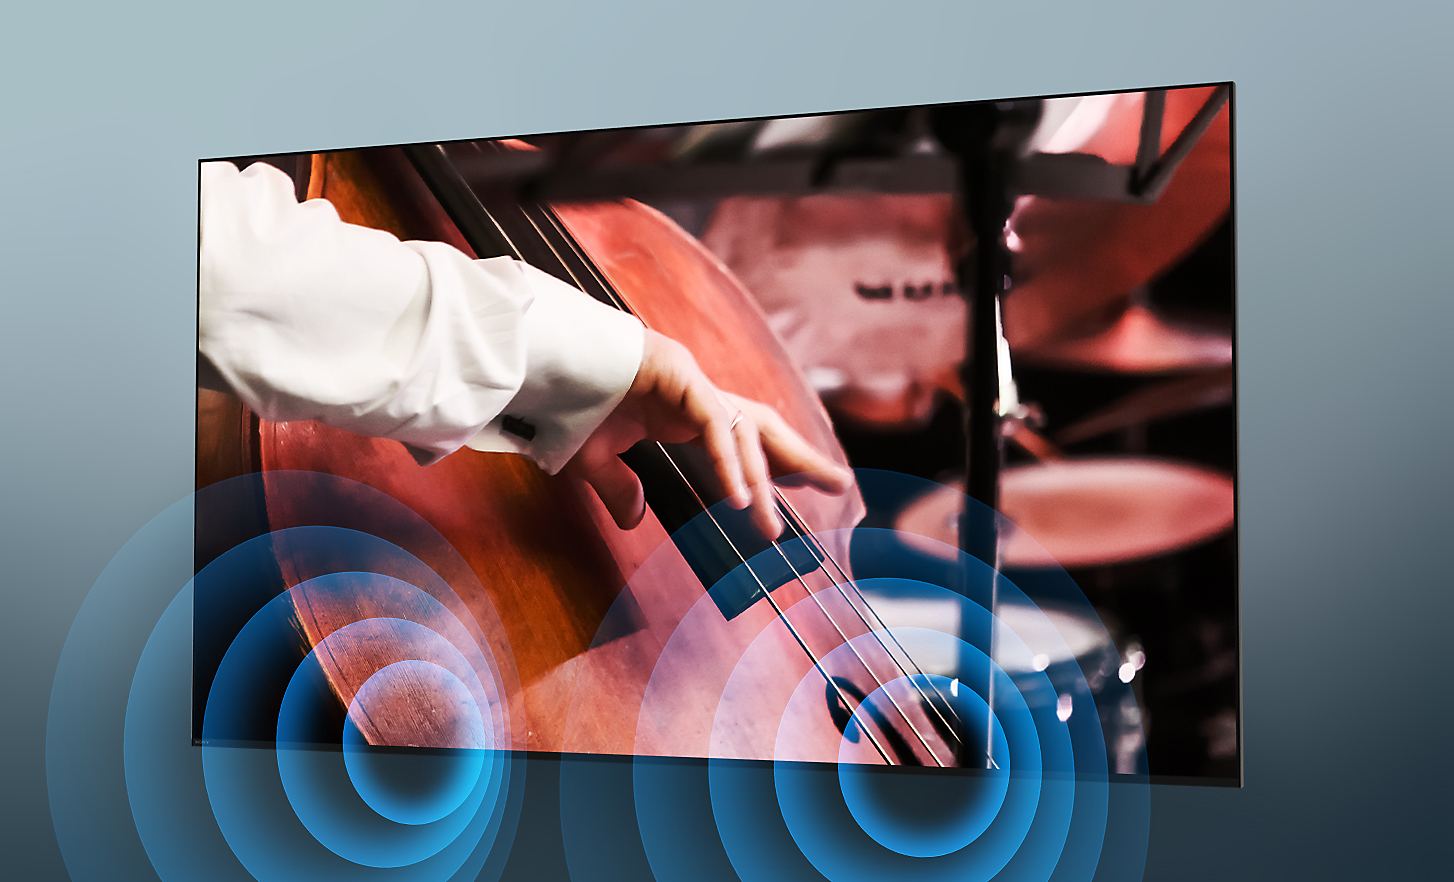 BRAVIA TV med skærmbillede af musiker, der spiller kontrabas i et orkester